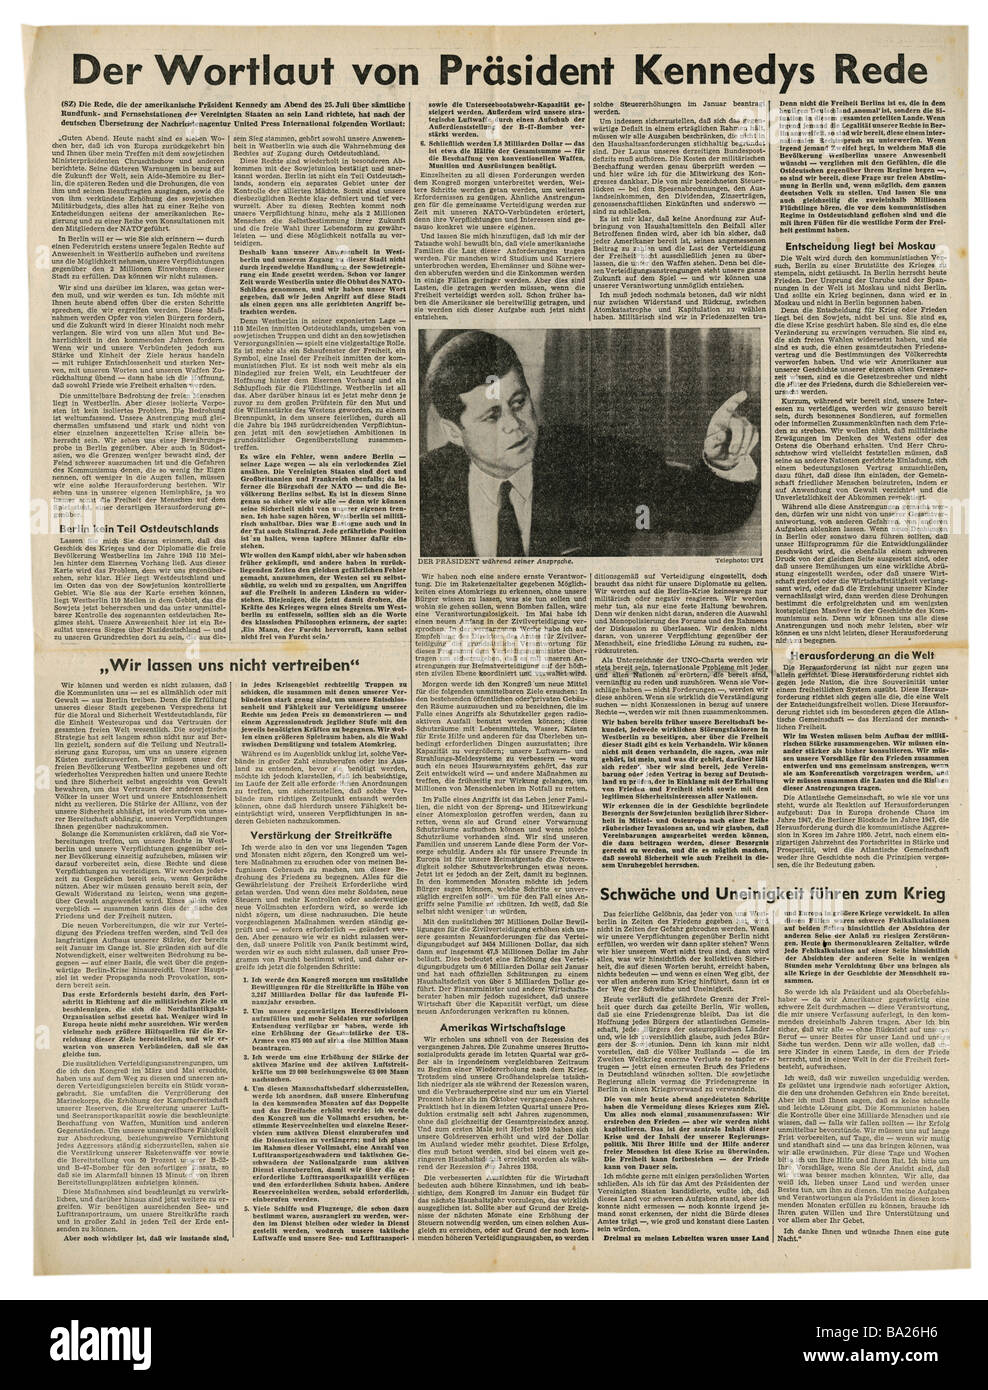 press/media, magazines, 'Süddeutsche Zeitung', Munich, 17 volume, number 178, Thursday 27.7.1961, article, Kennedy speech, Stock Photo